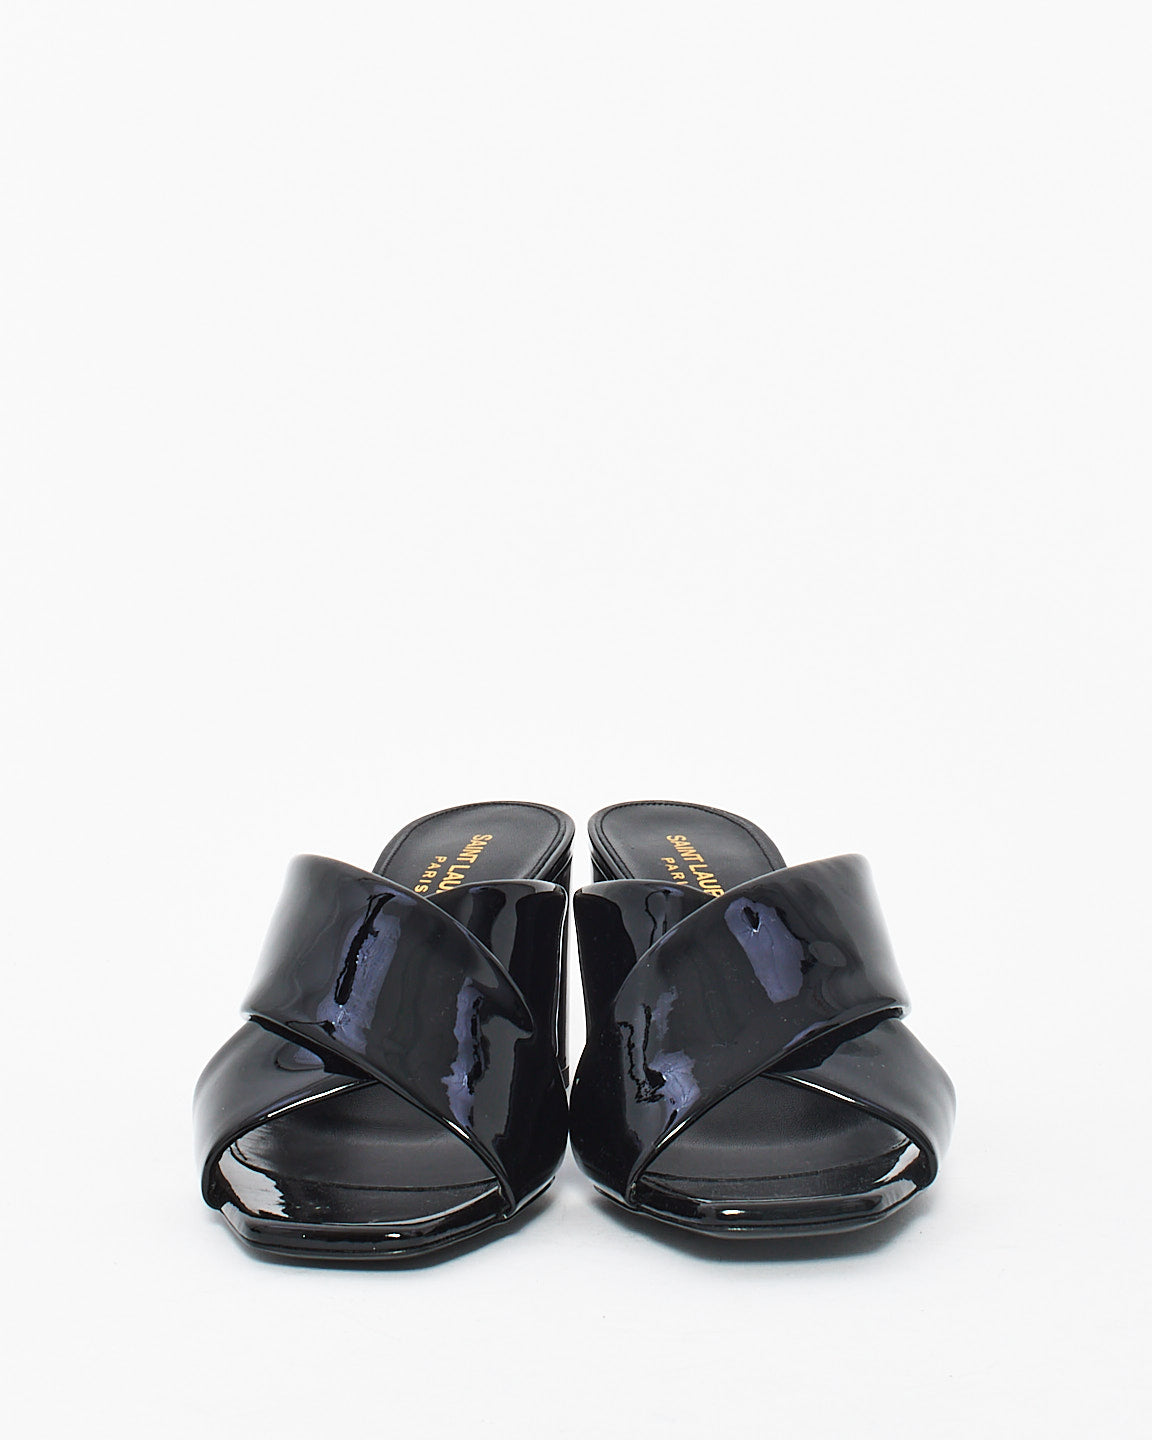 Saint Laurent Black Patent Loulou Leather Mule Heeled Sandals - 38.5